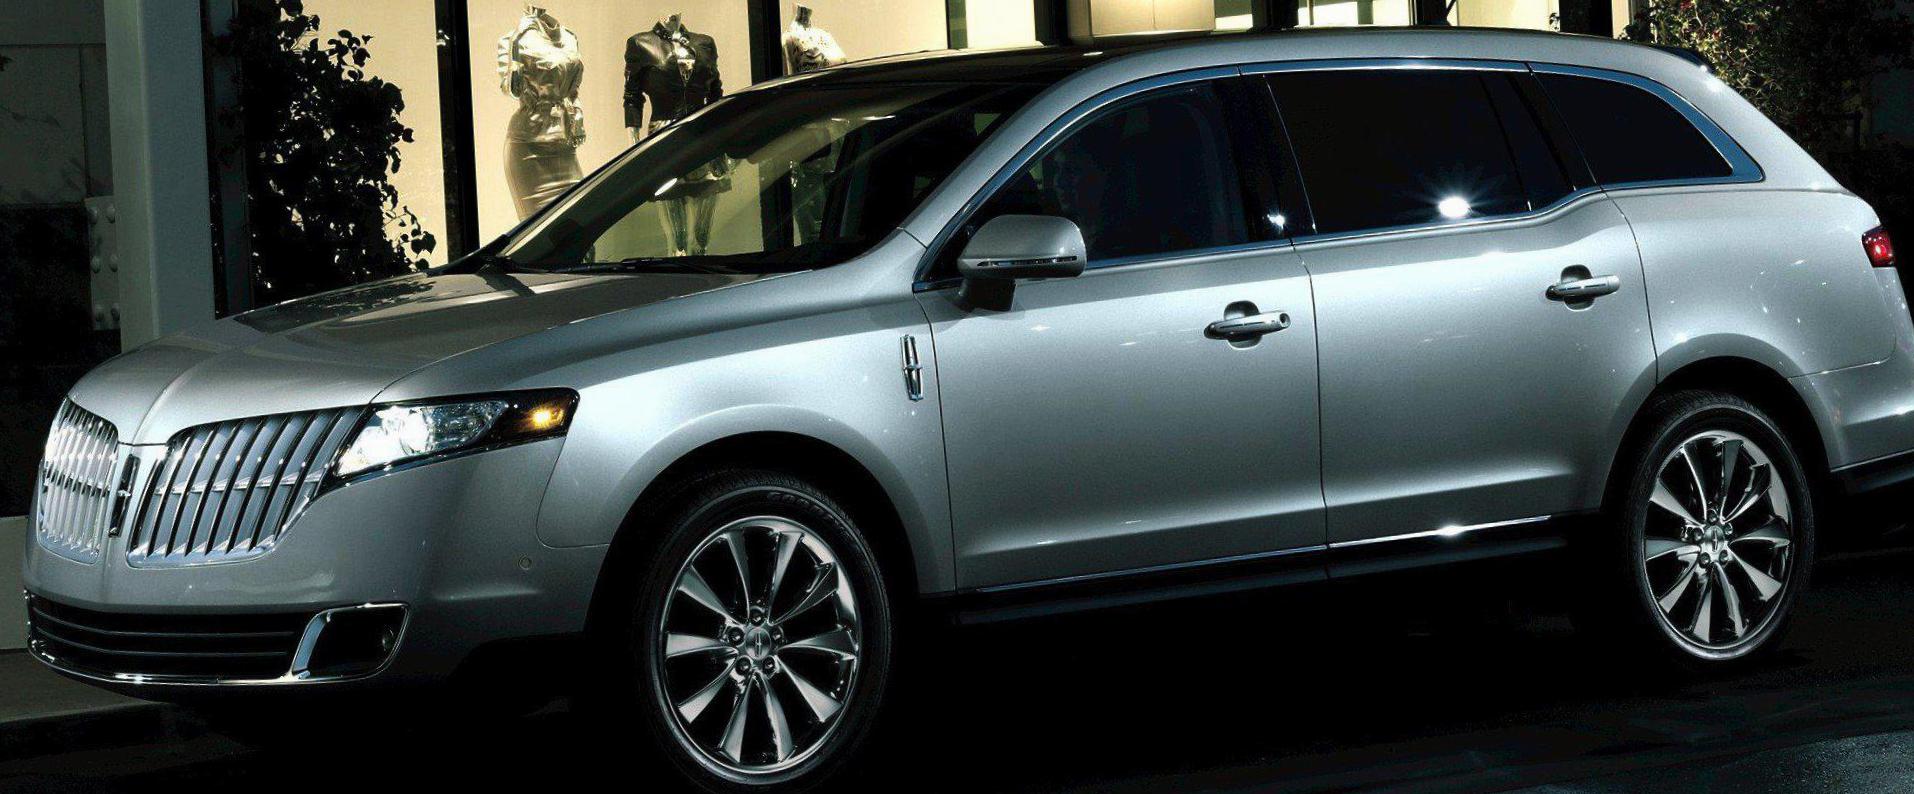 Lincoln MKT approved hatchback